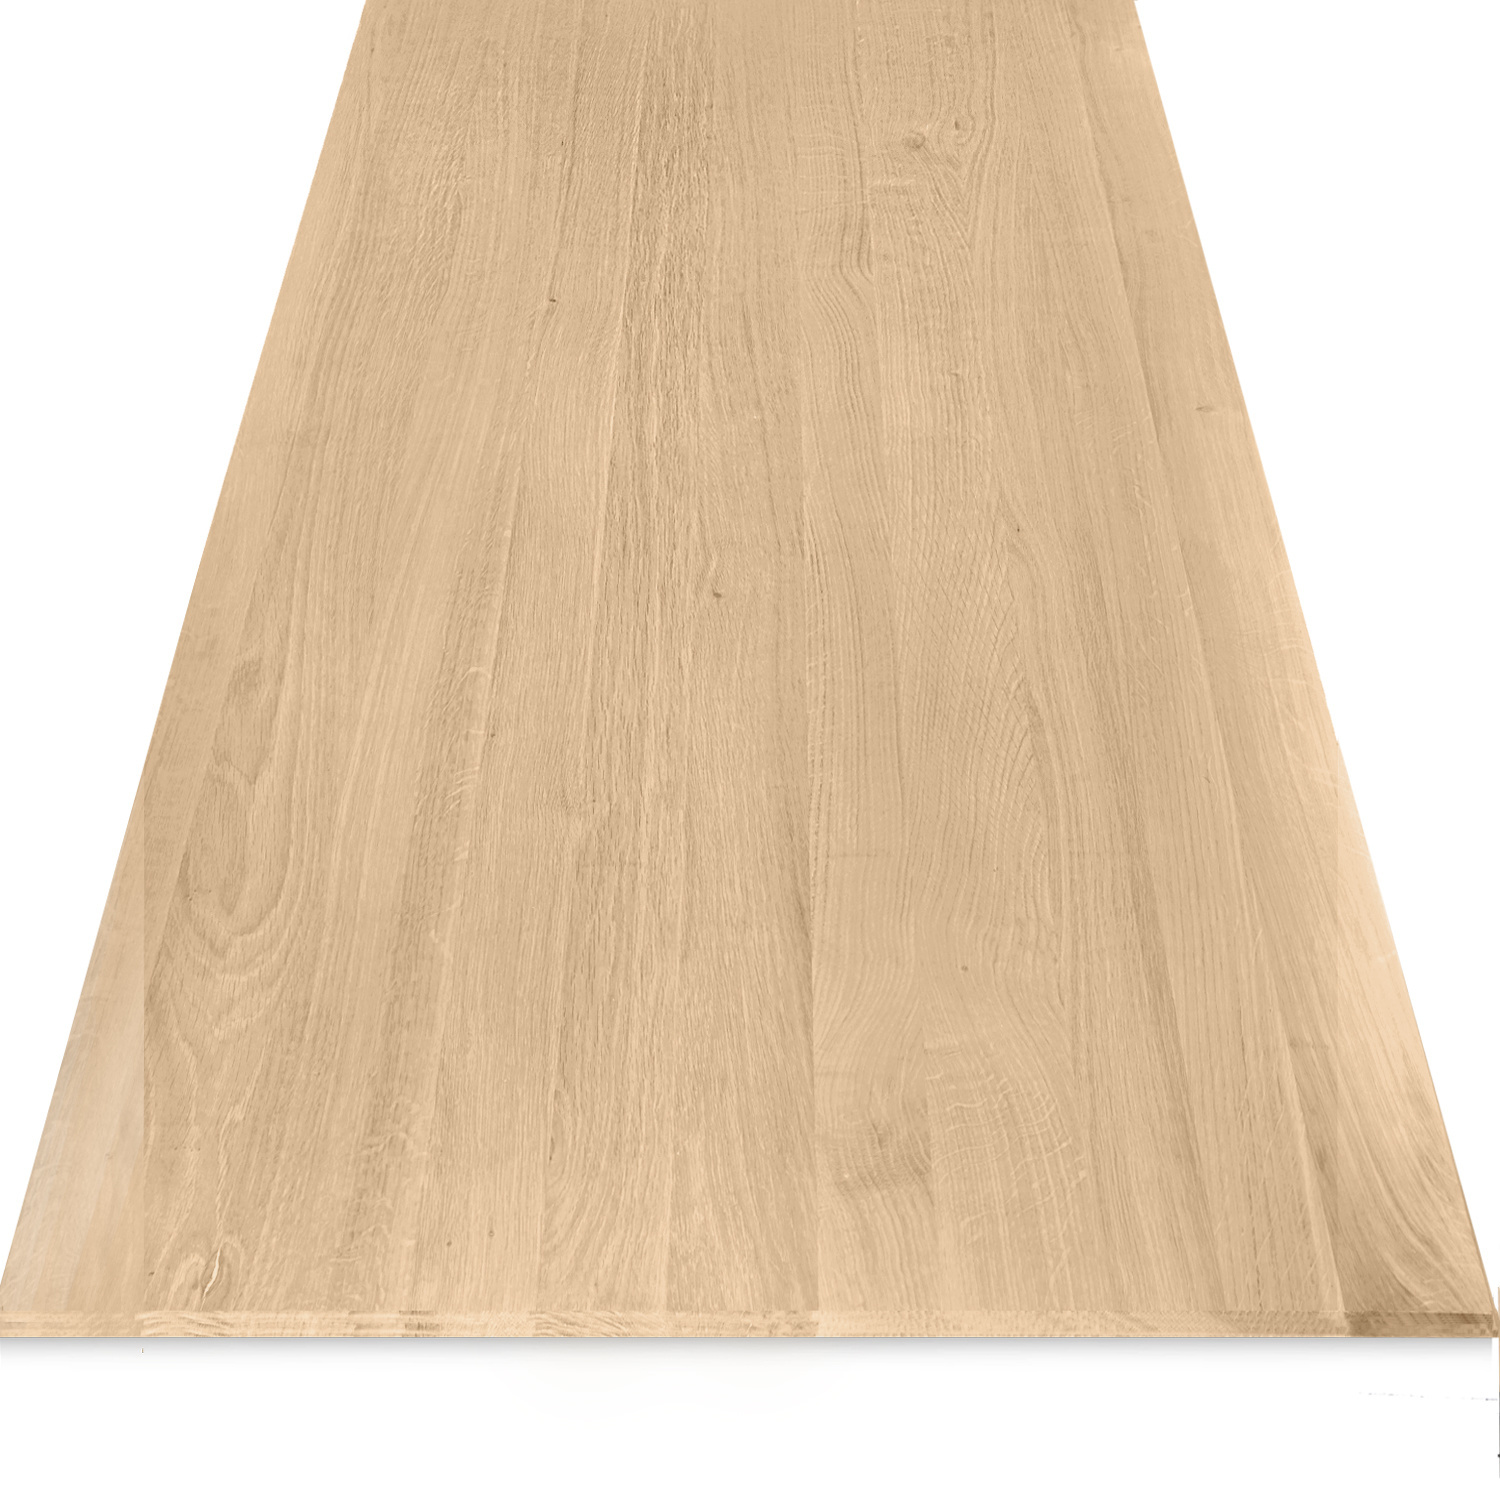  Eiken tafelblad verjongd op maat - 4 cm dik (1-laag) - foutvrij Europees eikenhout - met brede lamellen (circa 10-12 cm) - verlijmd kd 8-12% - 50-120x50-248 cm